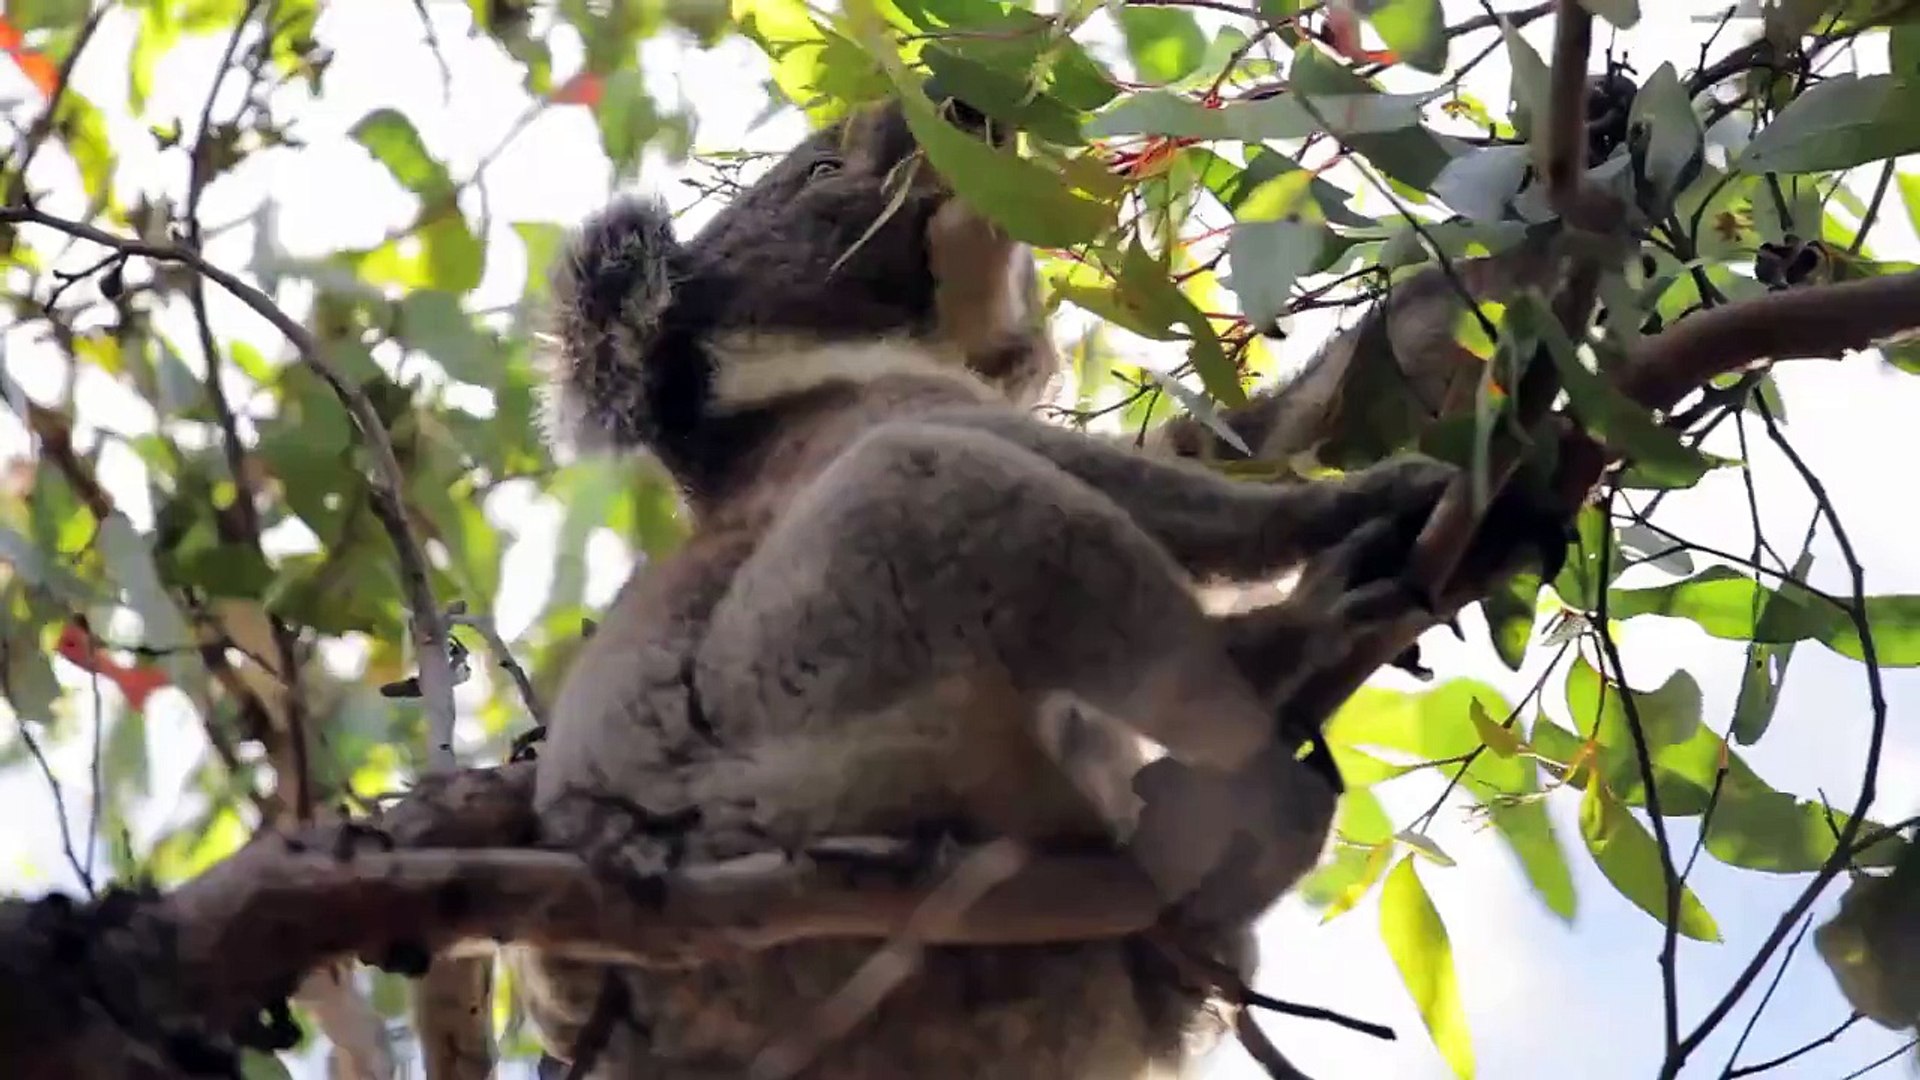 Koala and Kangaroo fighting